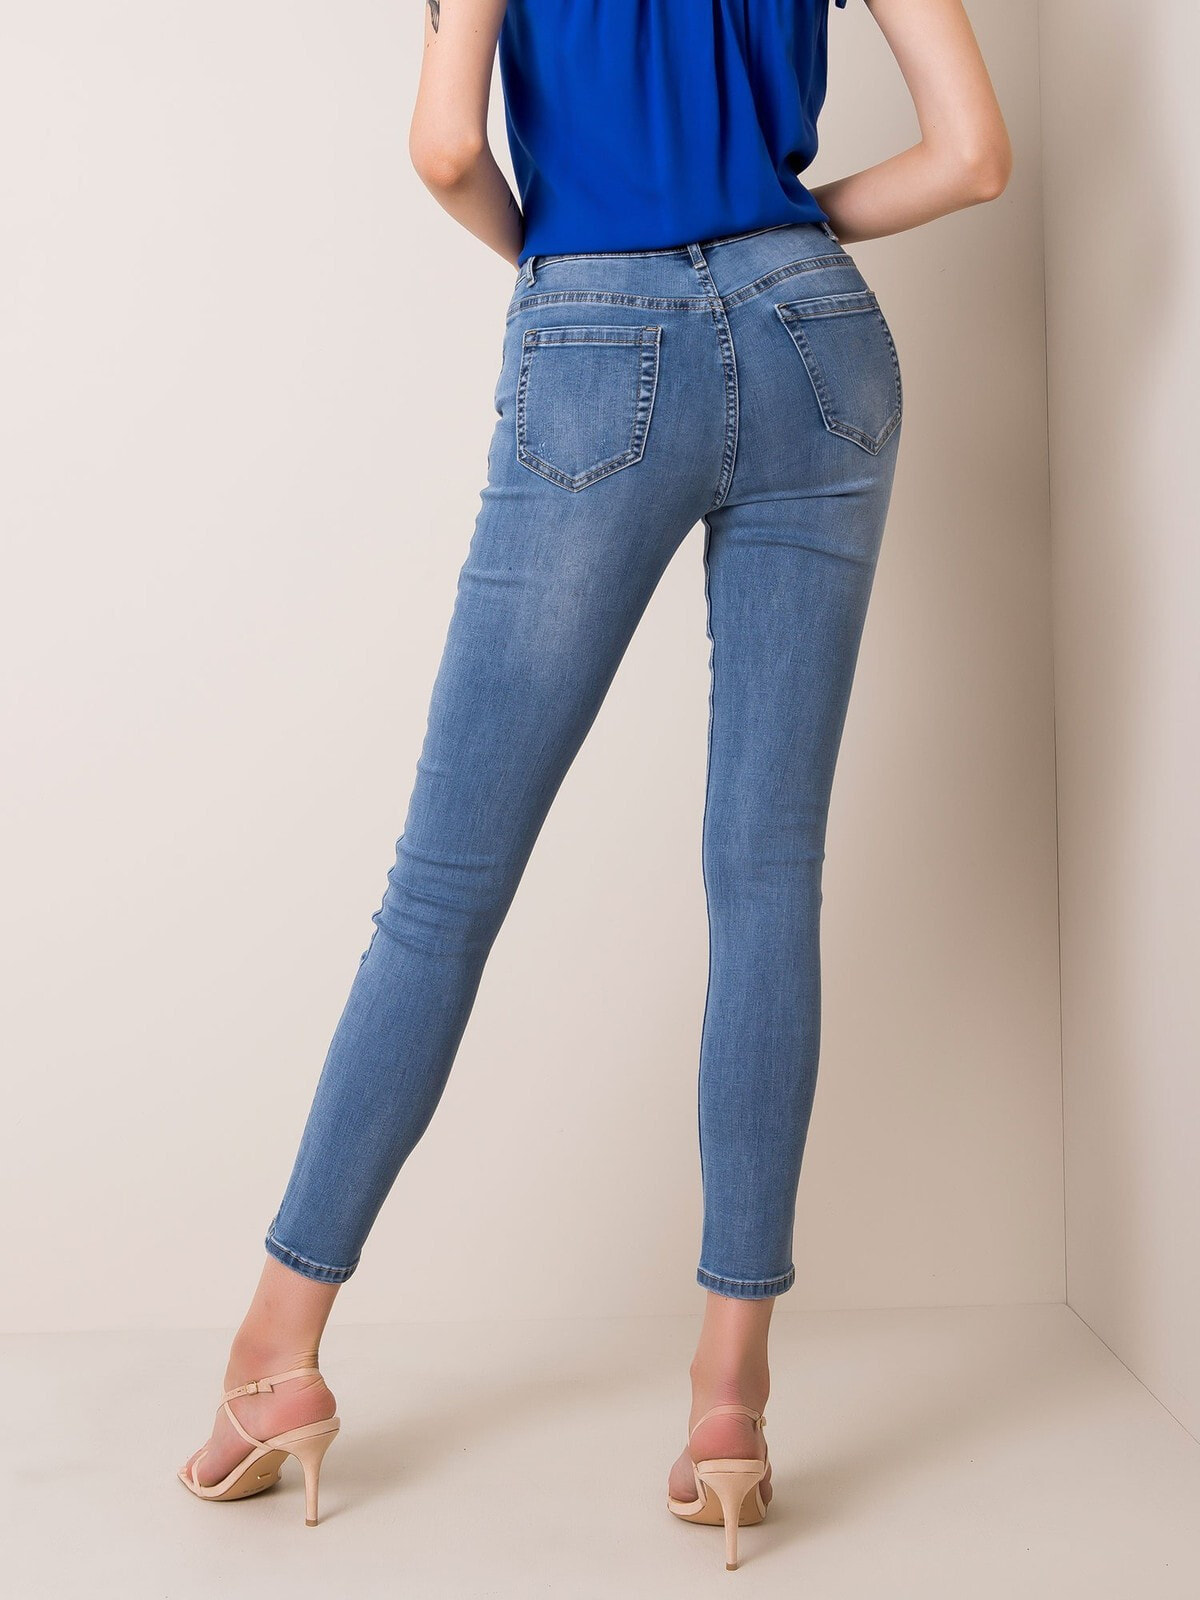 Женские джинсы скинни со средней посадкой укороченные голубые Factory Price